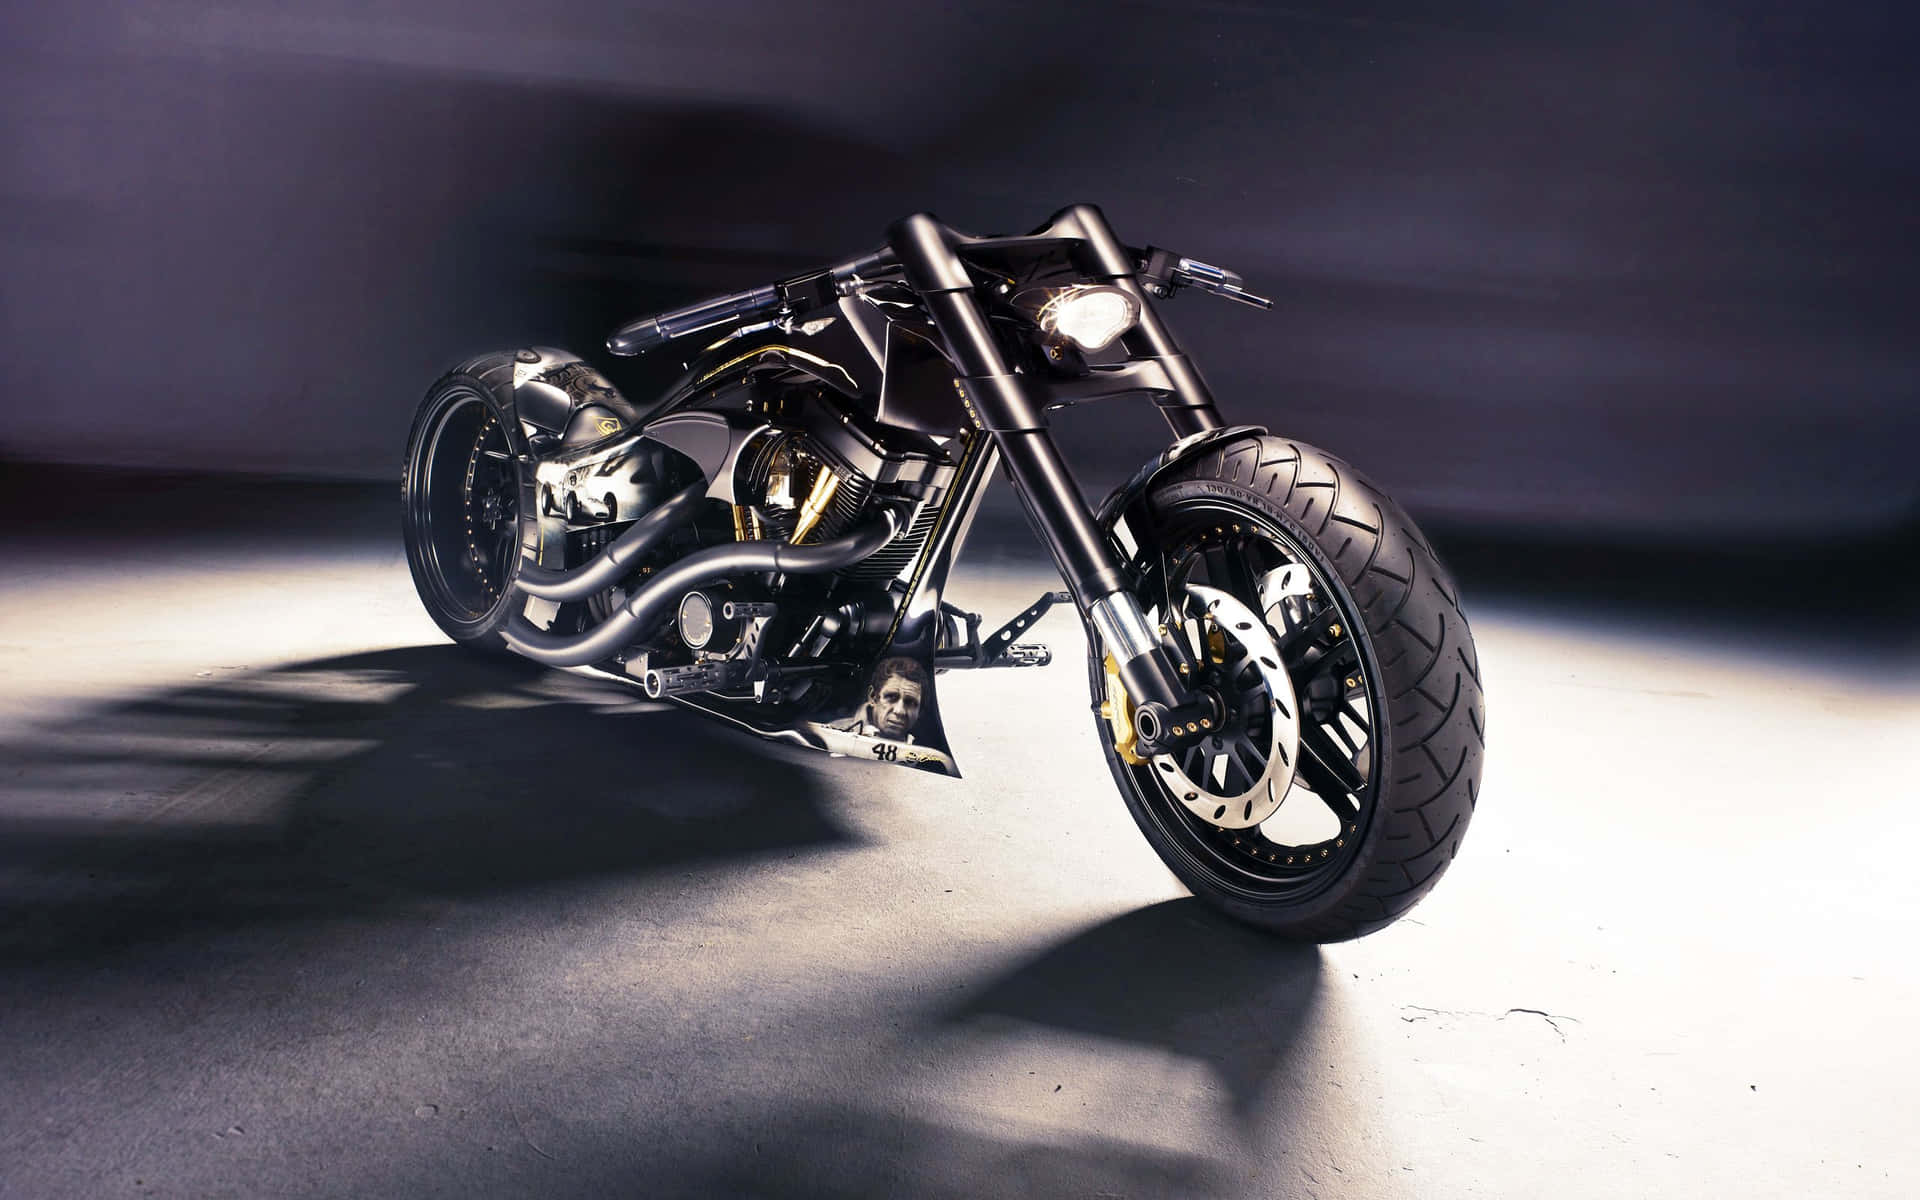 Fondode Pantalla Genial De Una Motocicleta Harley Davidson Completamente Negra